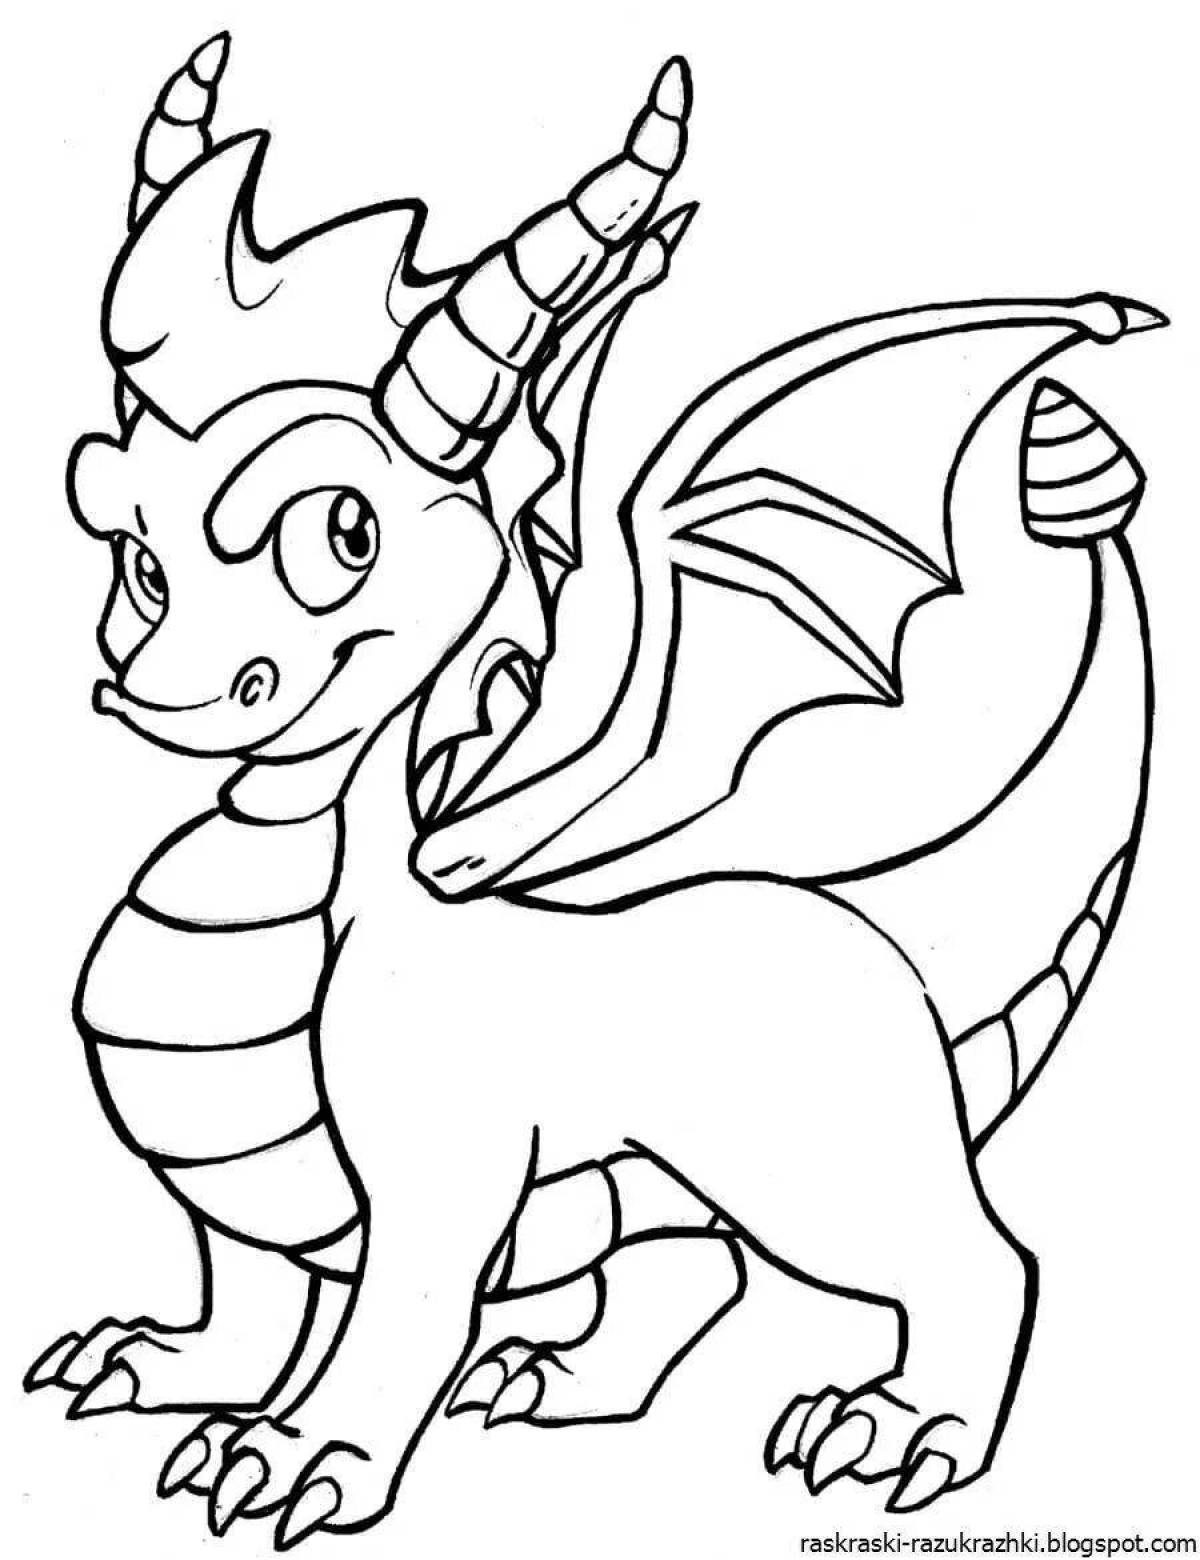 Эффектная раскраска драконы для детей 4-5 лет